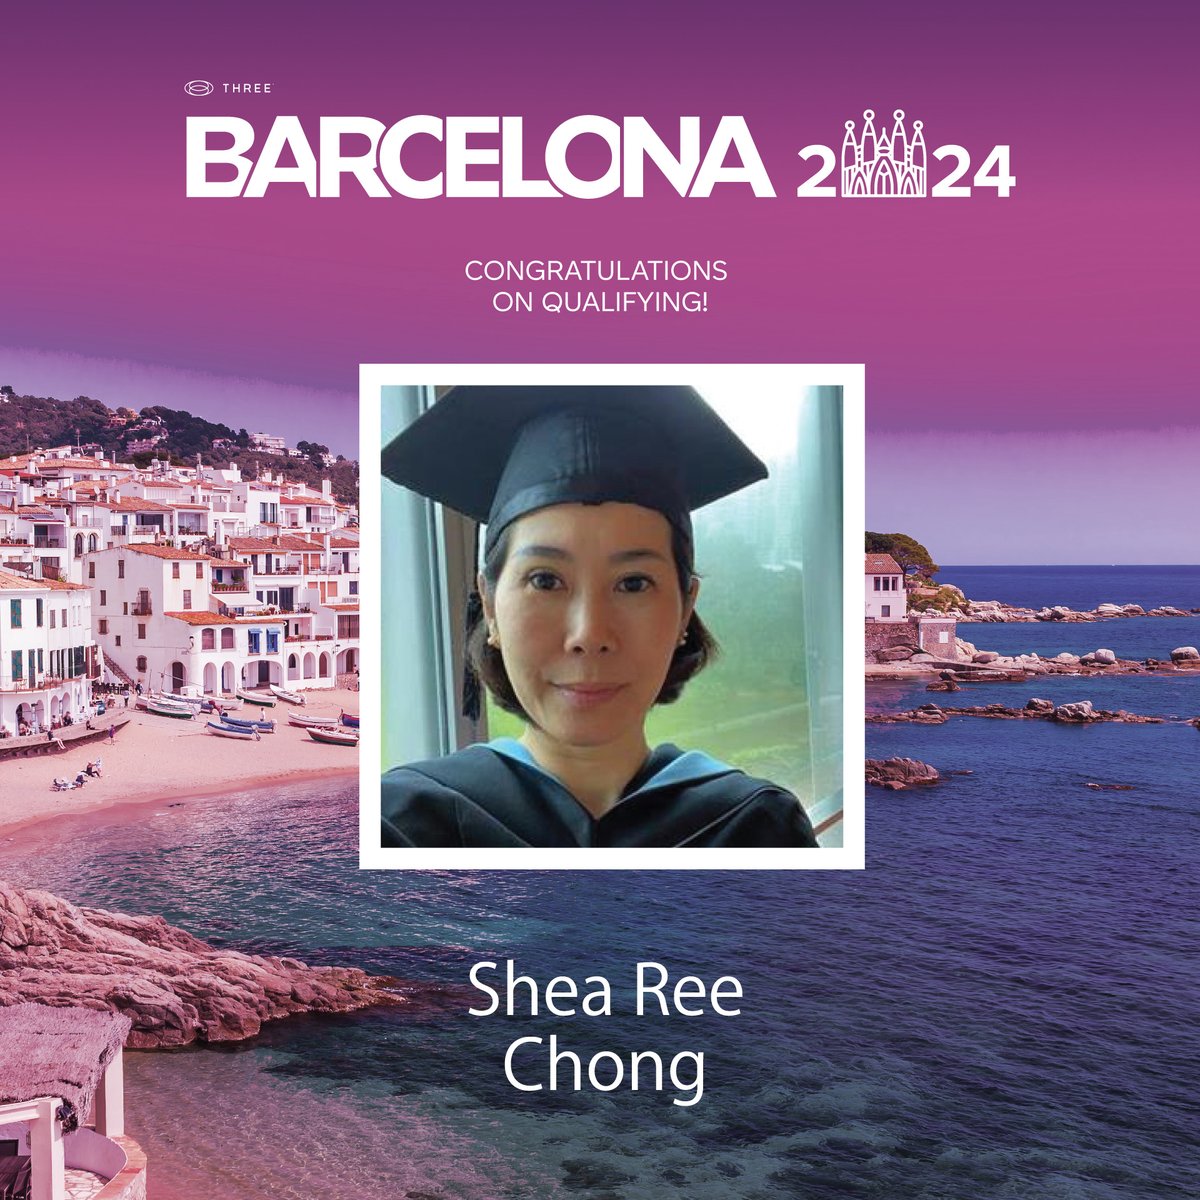 Shea-Ree-Chong-1